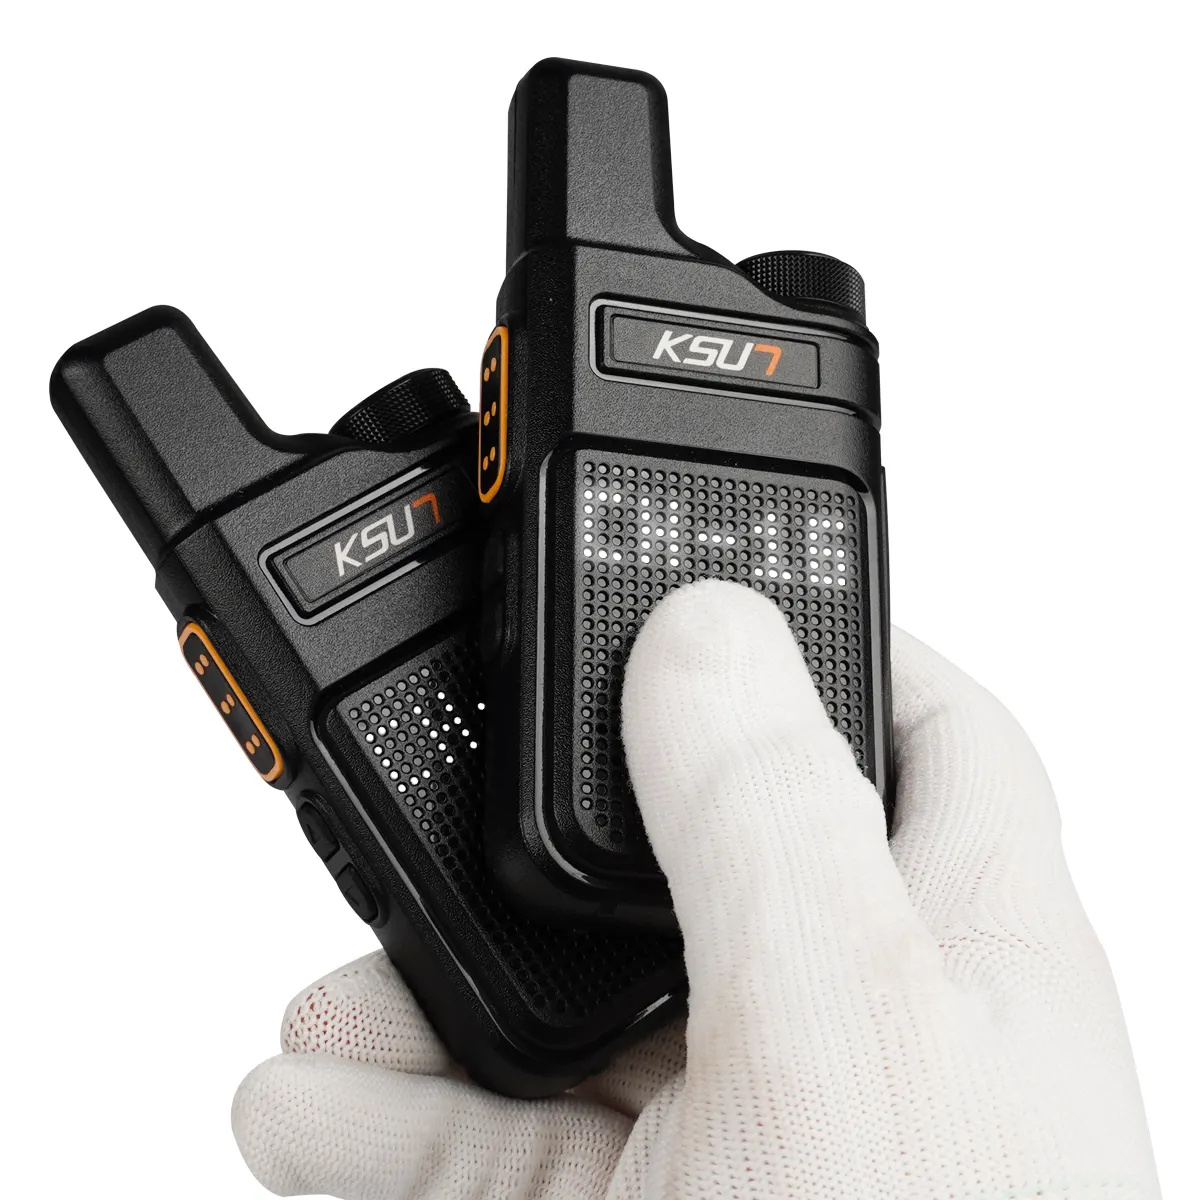 PMR 446 Walkie Talkie Mini portabel, Radio komunikasi Pro Walkie Talkie radio dua arah kualitas kt M6